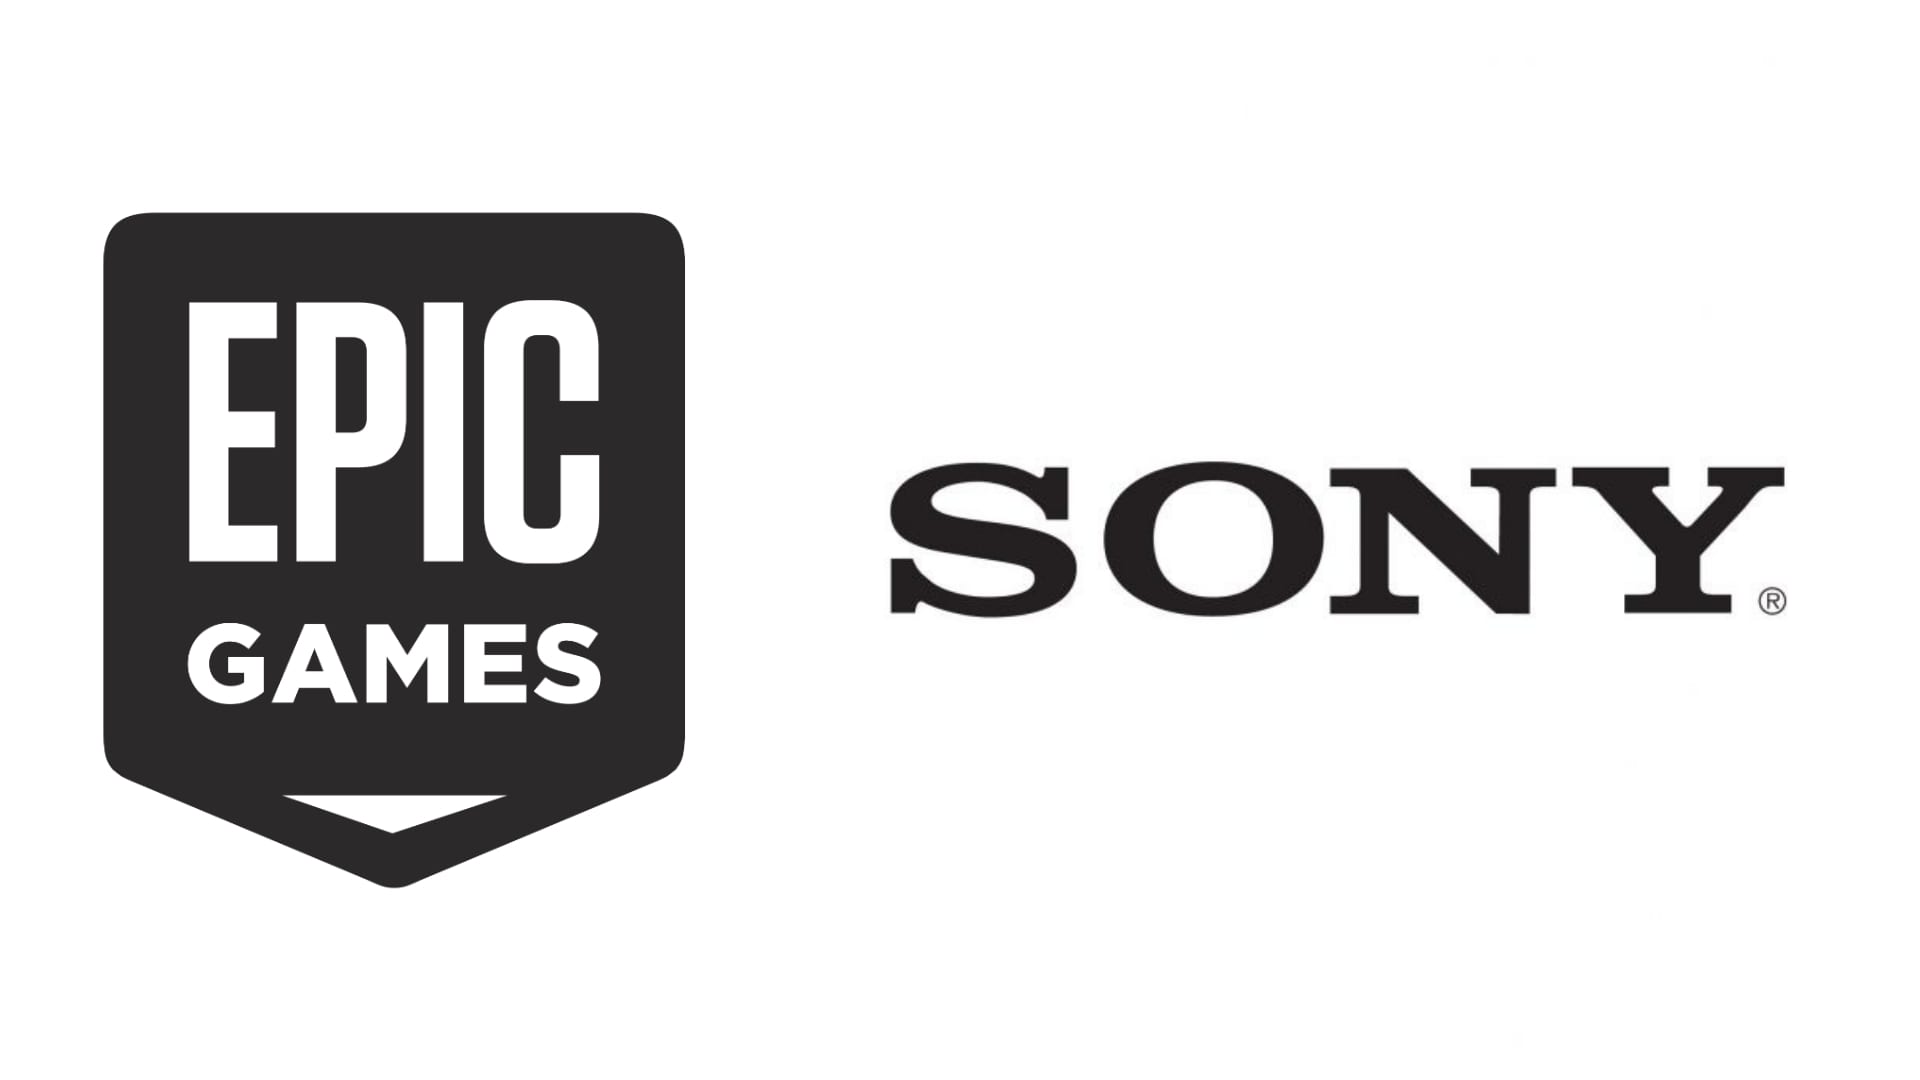 SONY 向 Epic Games 投资 10 亿美金